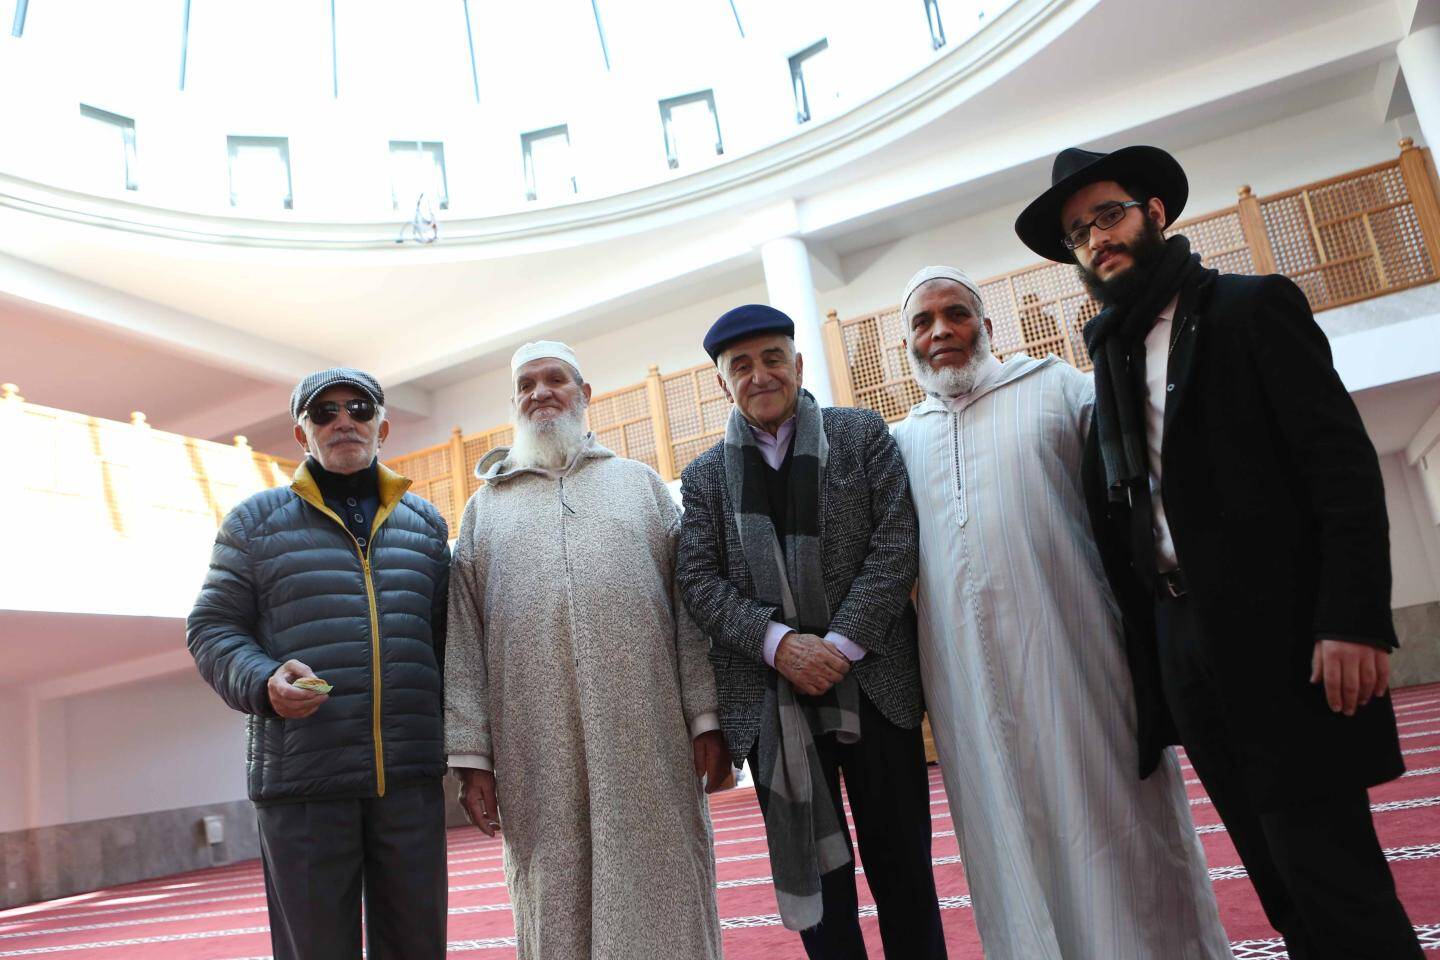 Rencontre entre communautés avec ici la visite de Gabriel Aymard et du Rabbin Méïr Altabé accueillis par l’Imam Medhi et Driss Maaroufi.